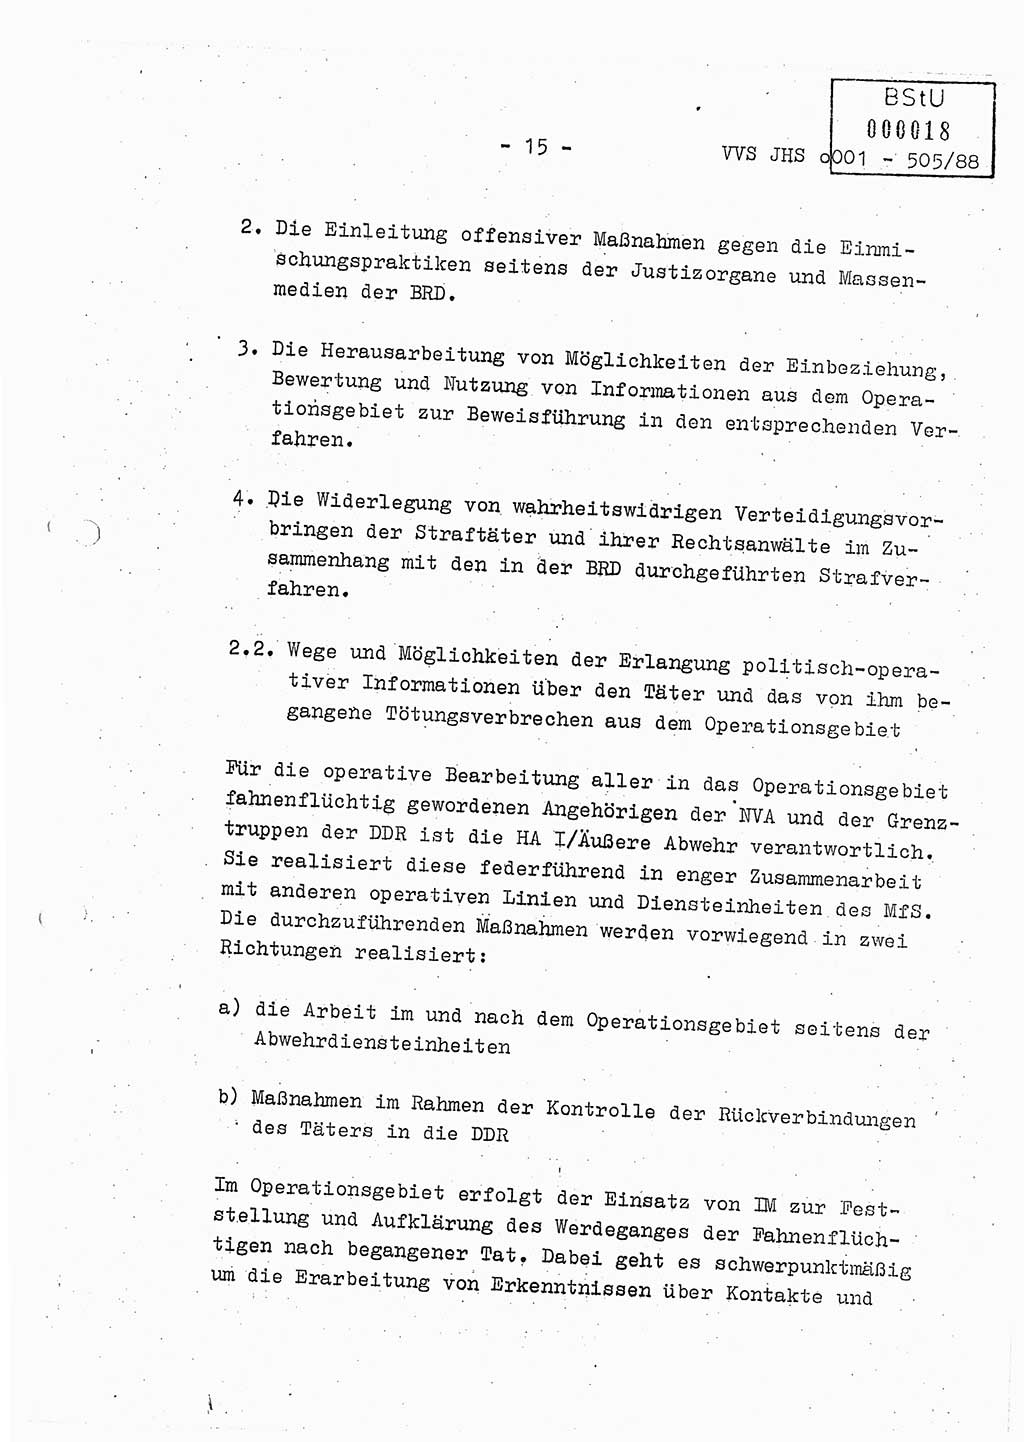 Diplomarbeit Leutnant Frank Schulze (HA Ⅸ/9), Ministerium für Staatssicherheit (MfS) [Deutsche Demokratische Republik (DDR)], Juristische Hochschule (JHS), Vertrauliche Verschlußsache (VVS) o001-505/88, Potsdam 1988, Seite 15 (Dipl.-Arb. MfS DDR JHS VVS o001-505/88 1988, S. 15)